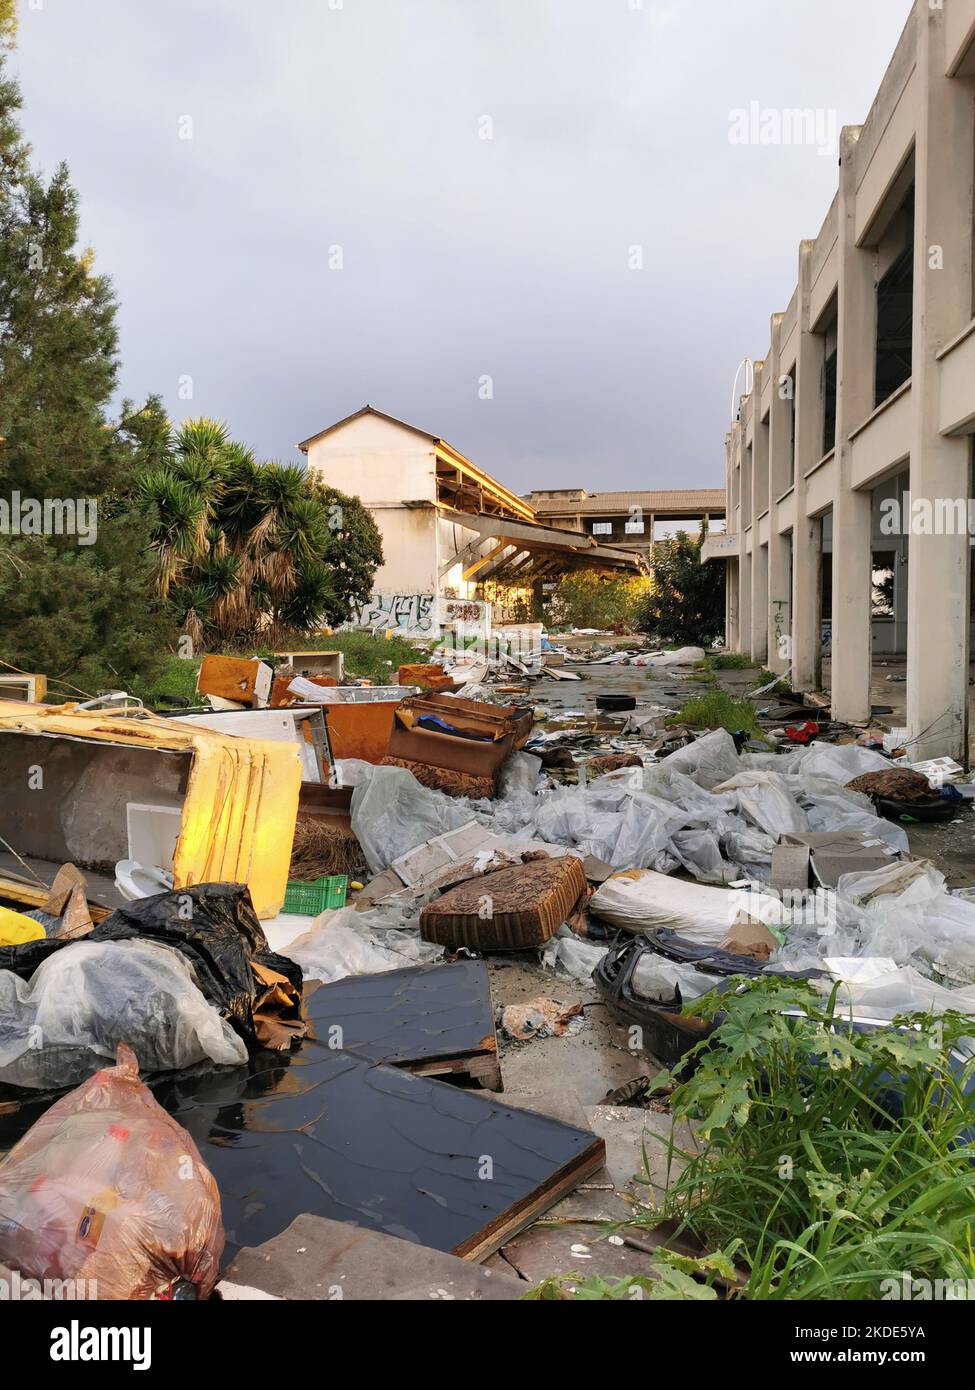 Limassol, Zypern, Januar 20 2020: Hausmüll und Industriemüll im Freien, die die Umwelt verschmutzen. Umweltverschmutzung, Recycling Stockfoto